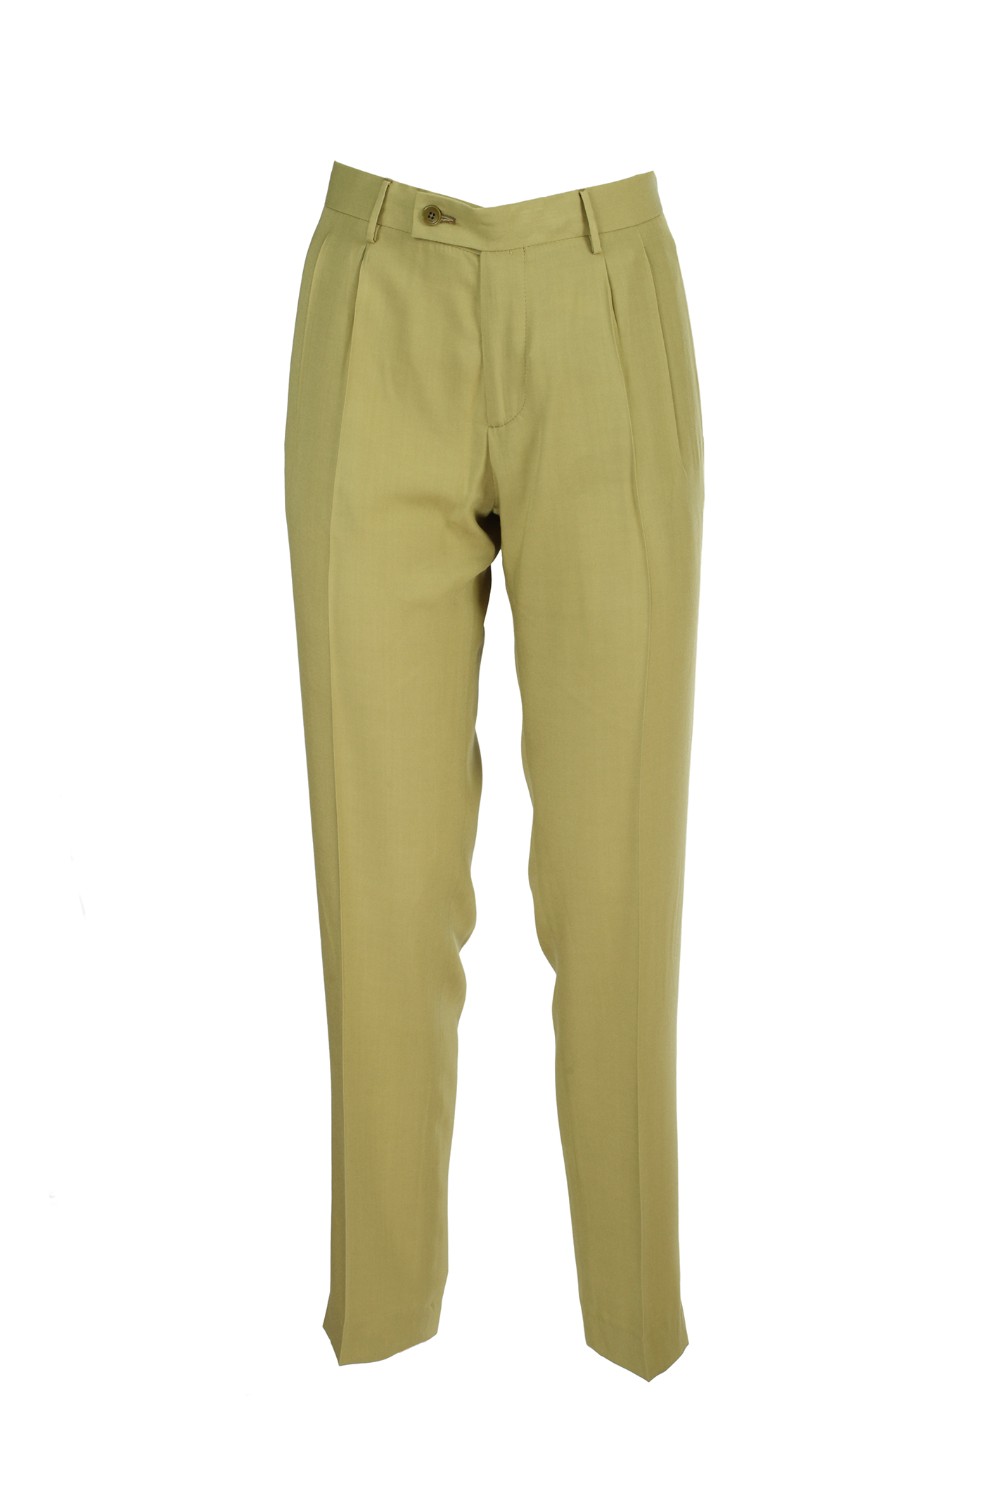 shop ETRO Saldi Pantalone: Etro pantalone verde.
Doppia pince.
Abbottonatura con zip e bottone.
Made in Italy.. 13325 4310-0500 number 8954326